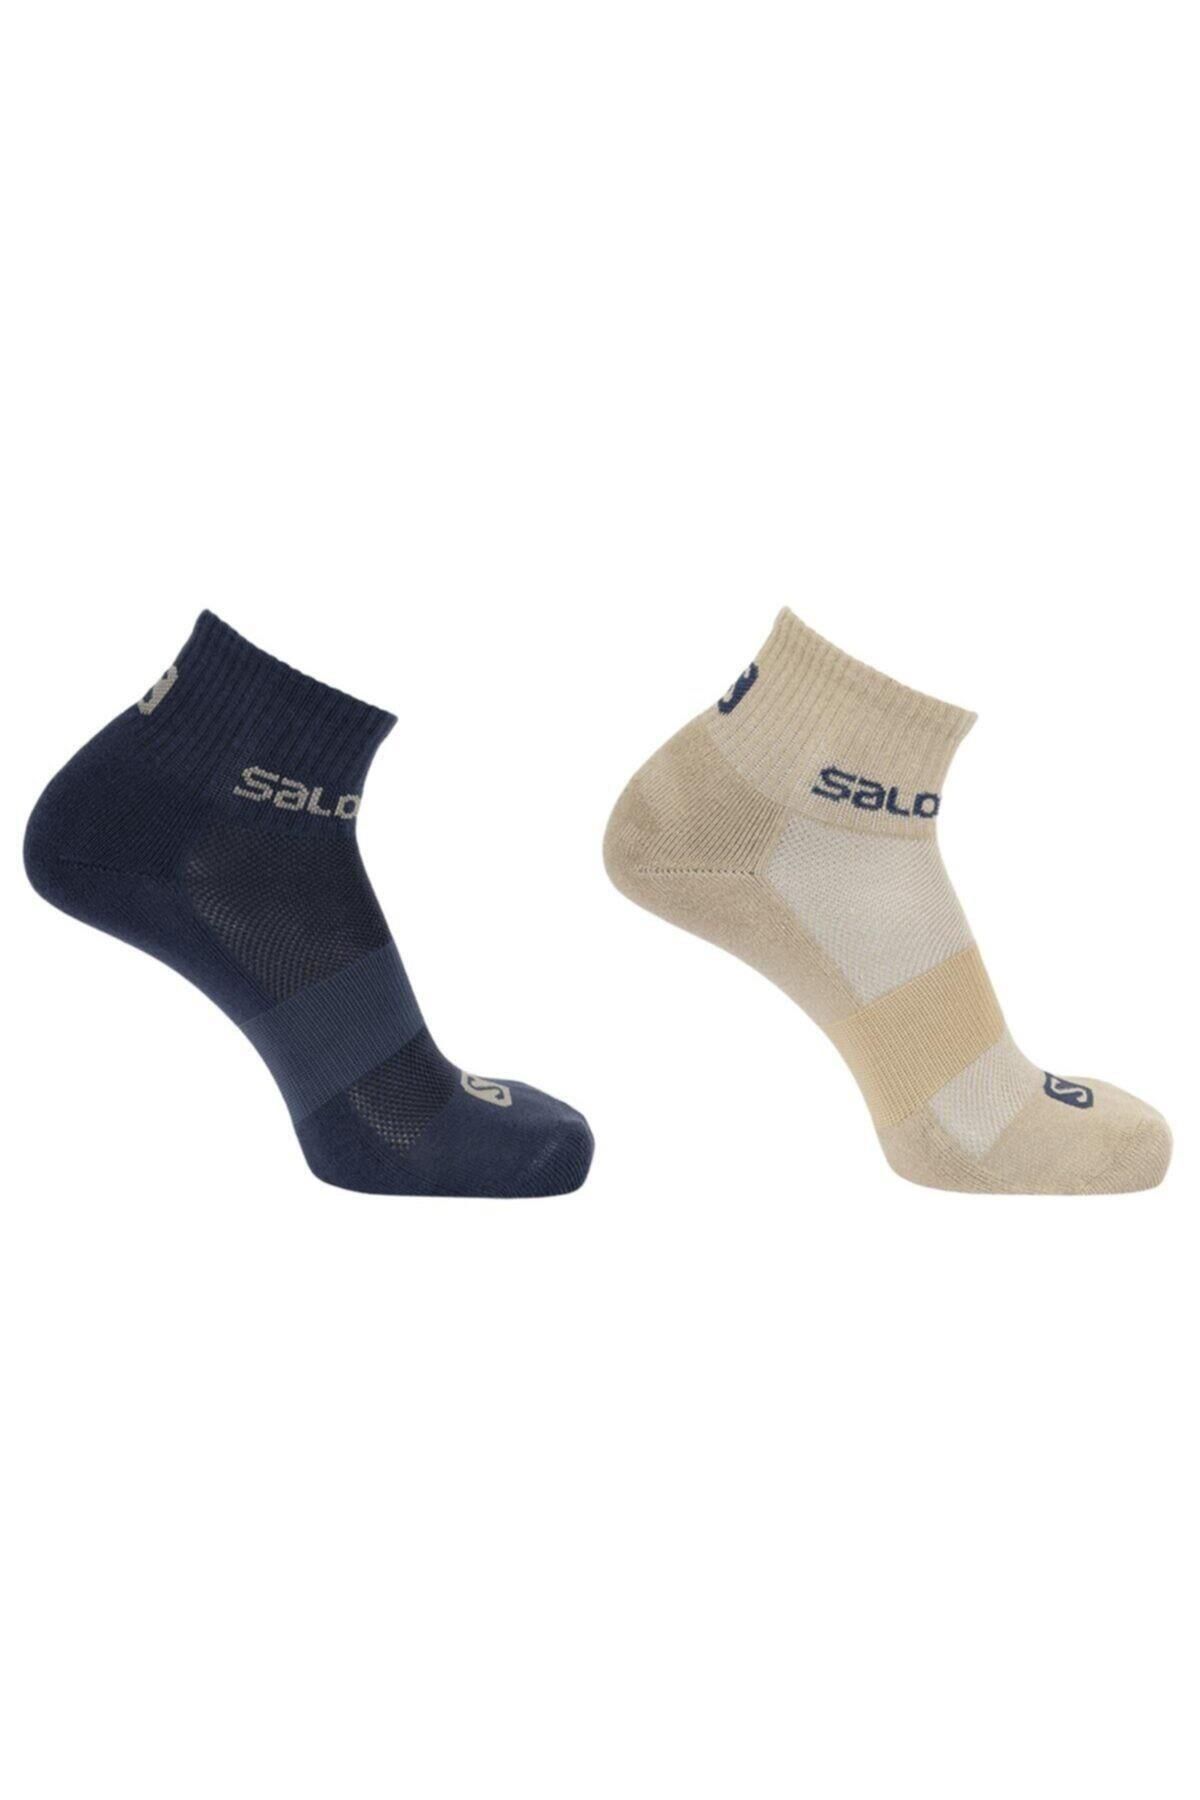 Salomon Evasion 2-Pack Unisex Outdoor Çok Renkli Günlük Stil Çorap